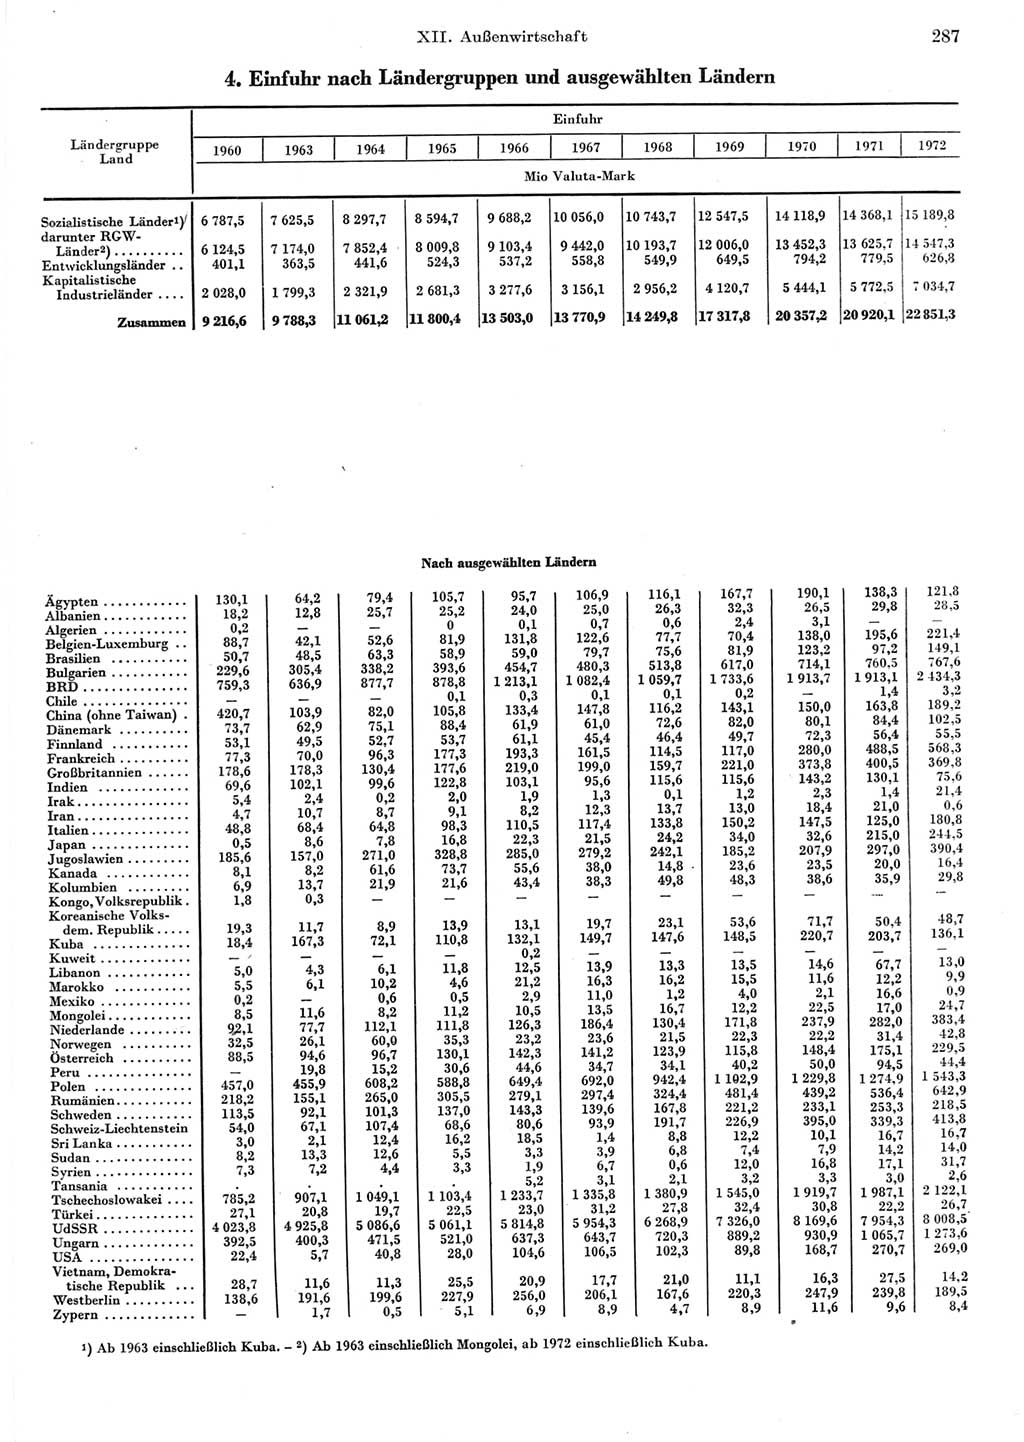 Statistisches Jahrbuch der Deutschen Demokratischen Republik (DDR) 1973, Seite 287 (Stat. Jb. DDR 1973, S. 287)